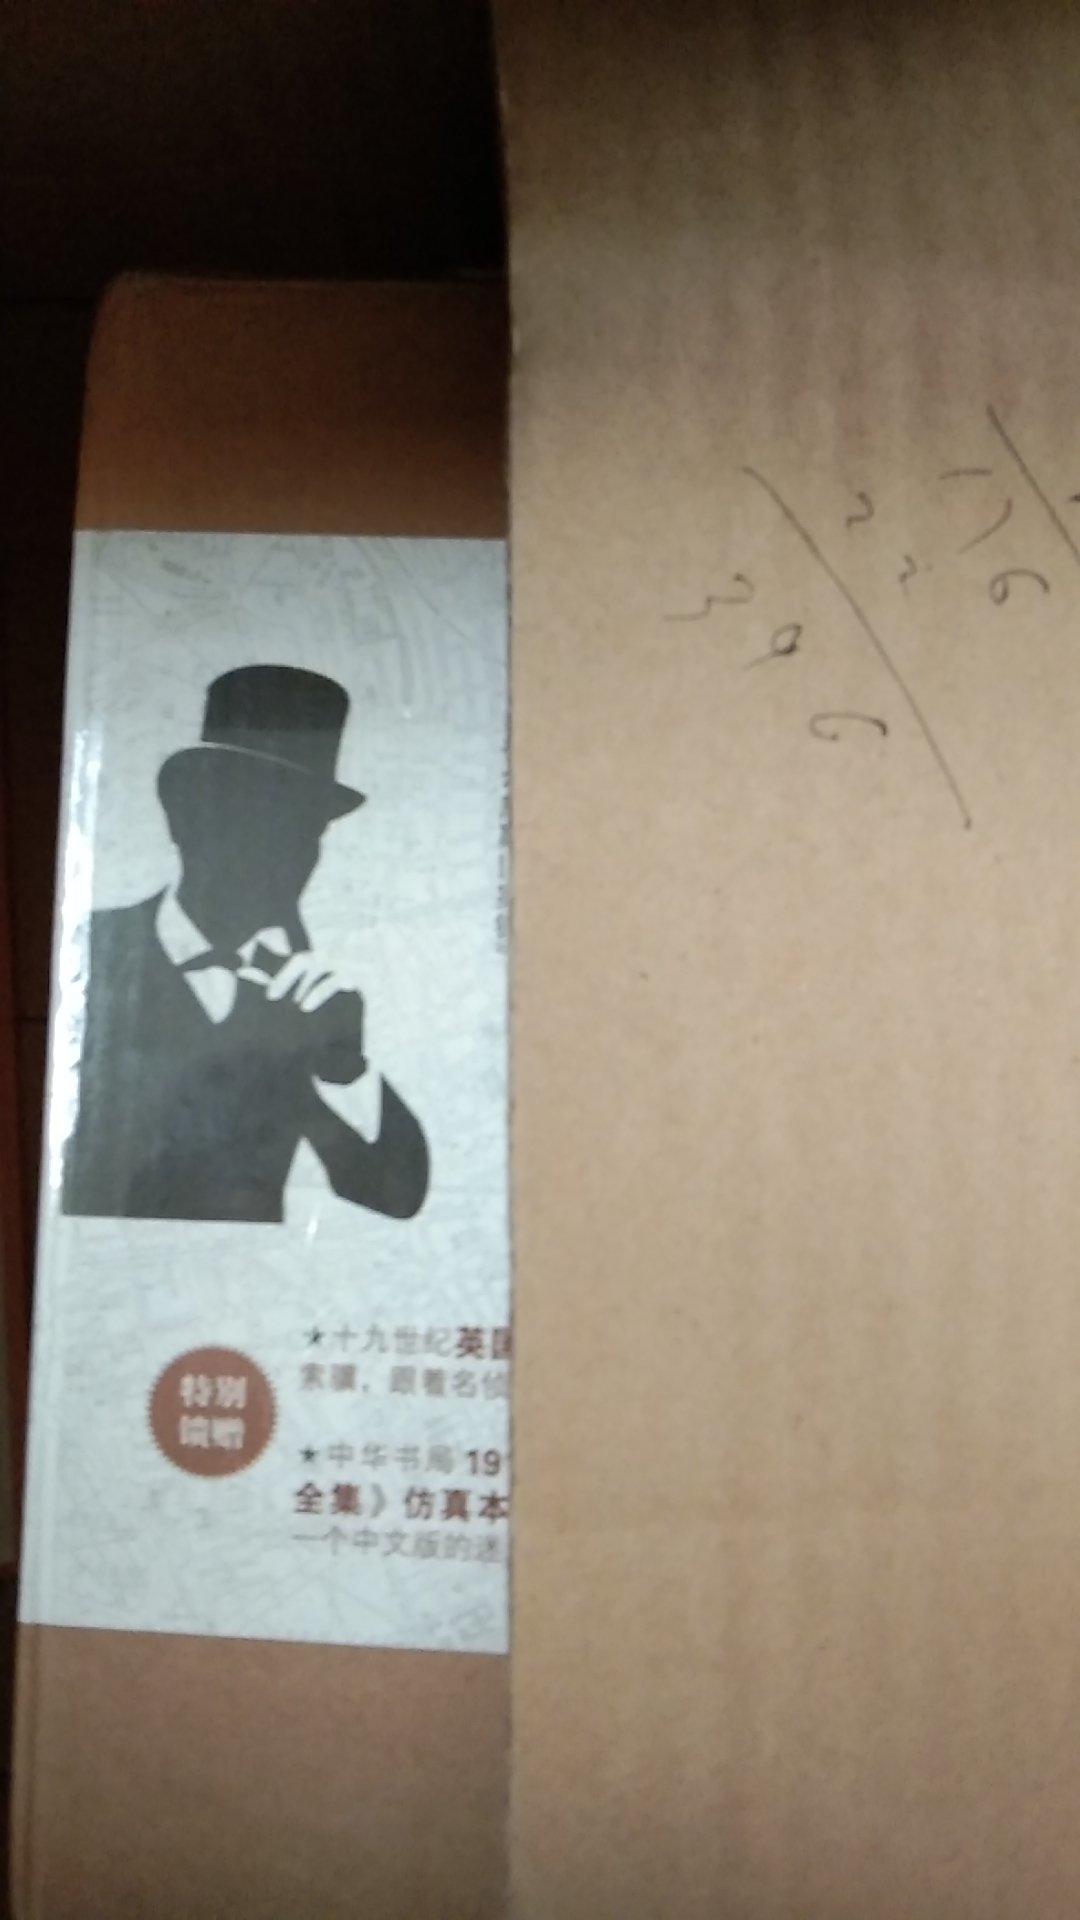 包装还不错，是个小箱子，还没拆开不知道内容如何。《福尔摩斯探案集》是聪明读书人的必备之书，又是著名的中华书局出版，不管是收藏还是送礼都很好，五星好评。